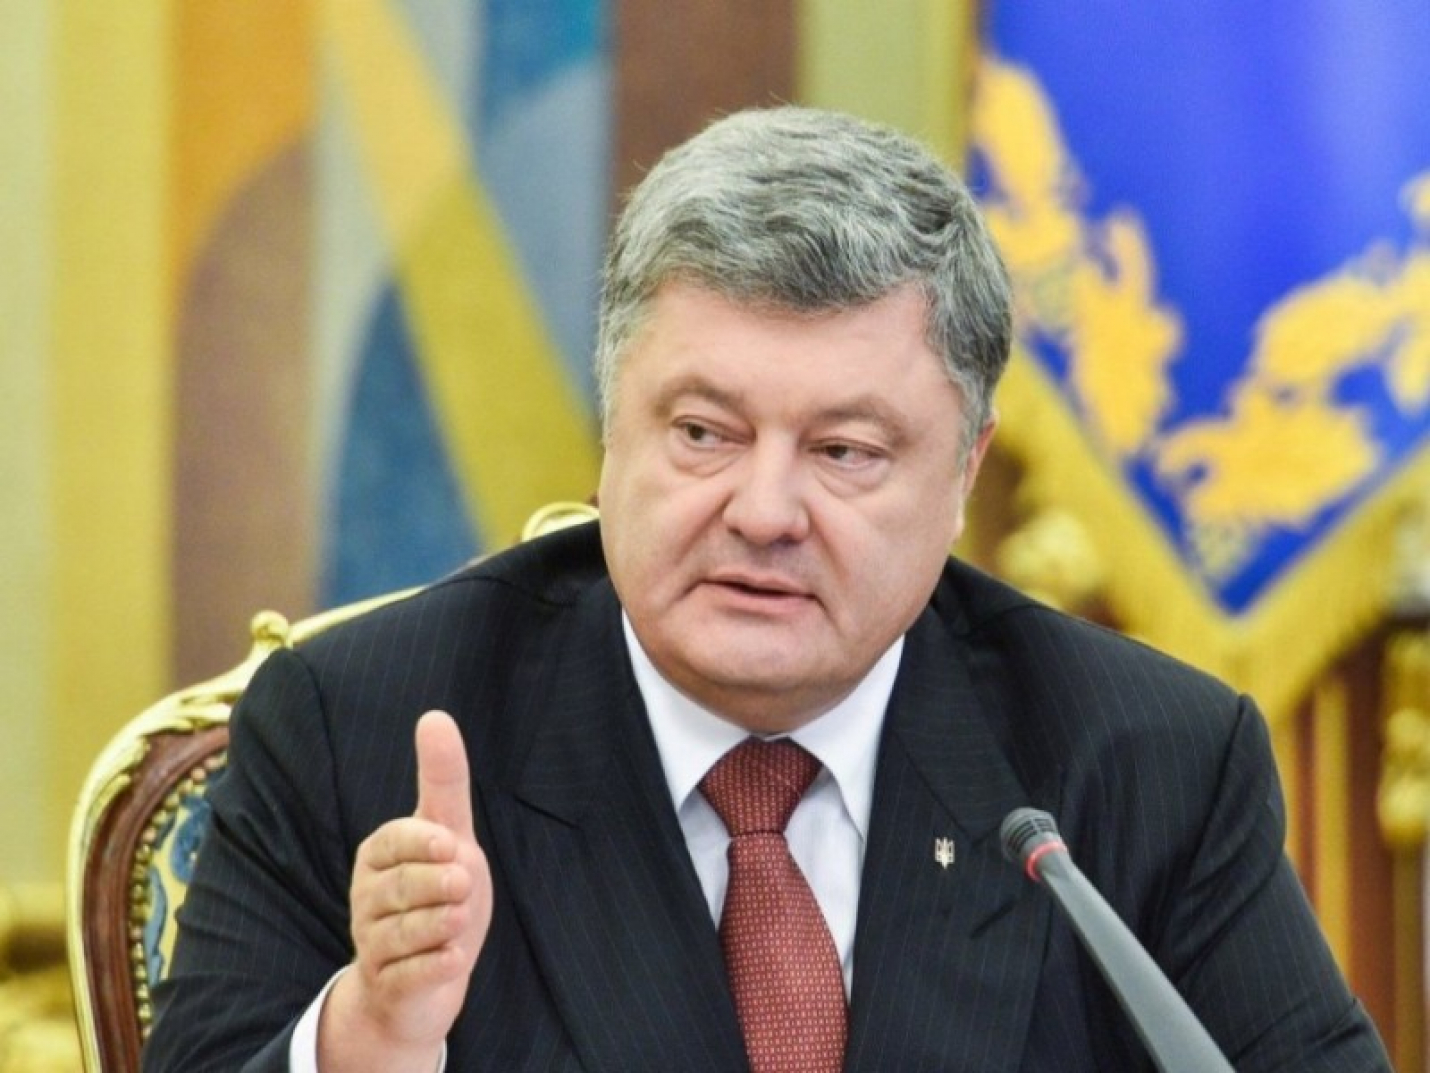 Порошенко заявил, что власти РФ обманули жителей Крыма